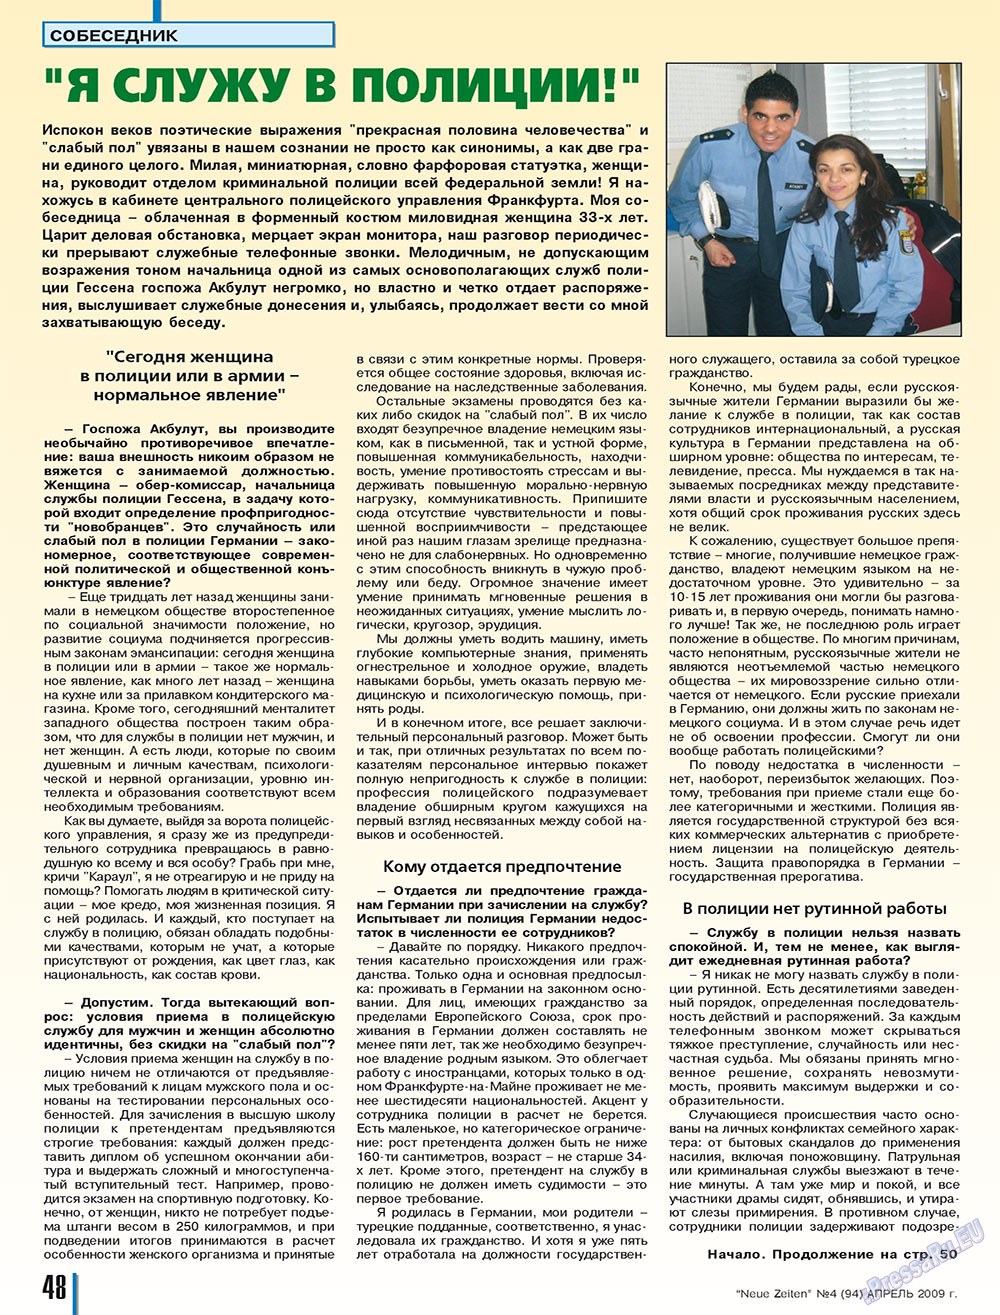 Neue Zeiten, журнал. 2009 №4 стр.48